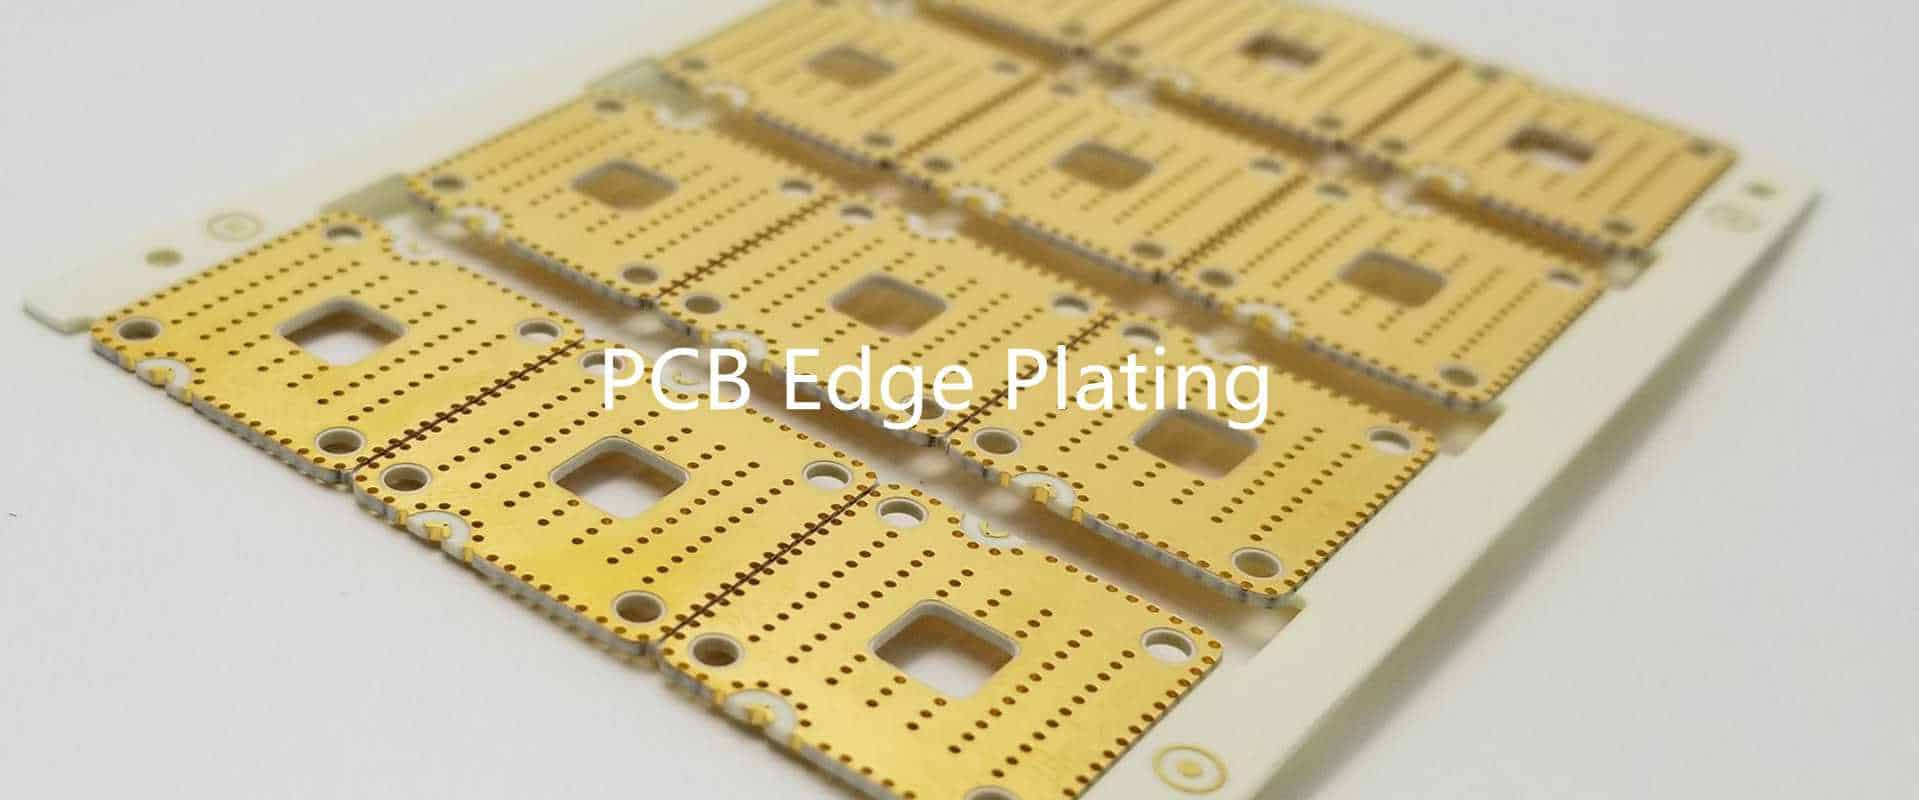 PCB Edge Plating